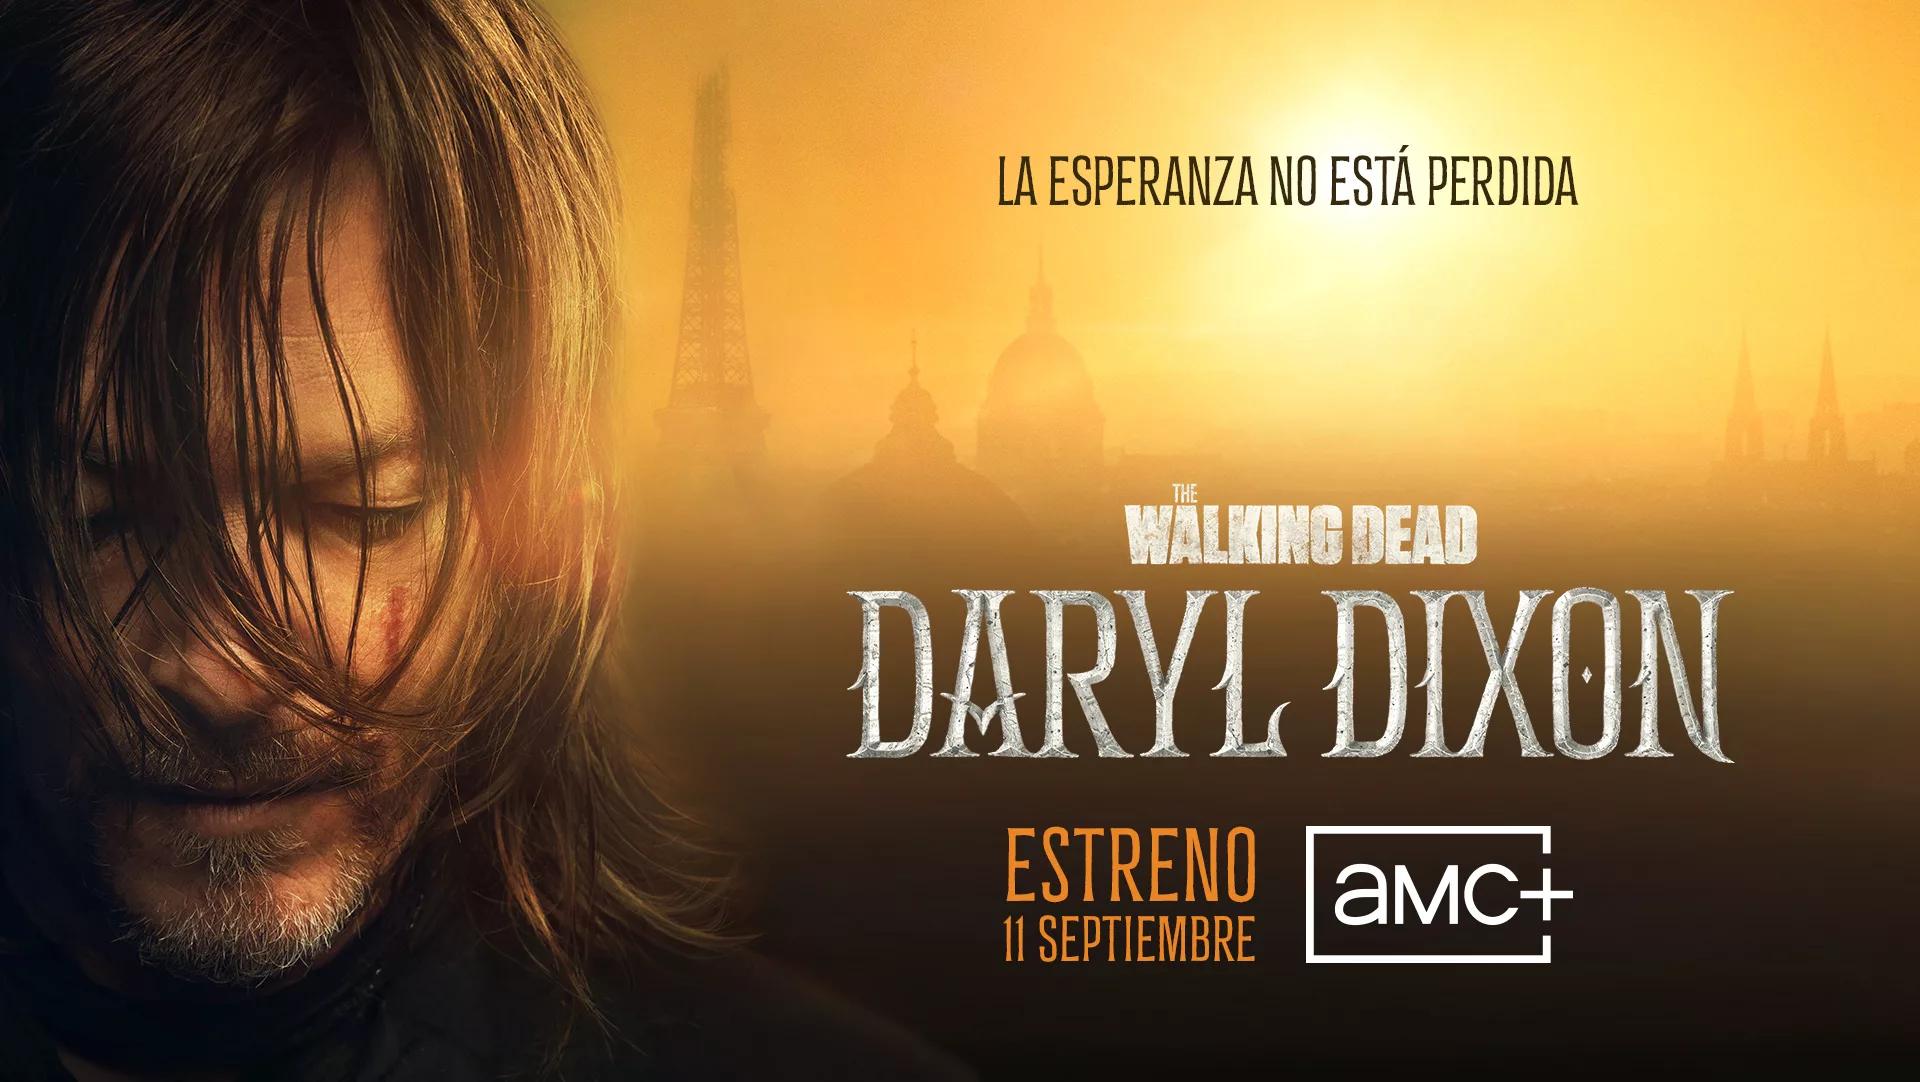  El servicio de streaming AMC+ estrena en exclusiva su nuevo spin-off The Walking Dead: Daryl Dixon